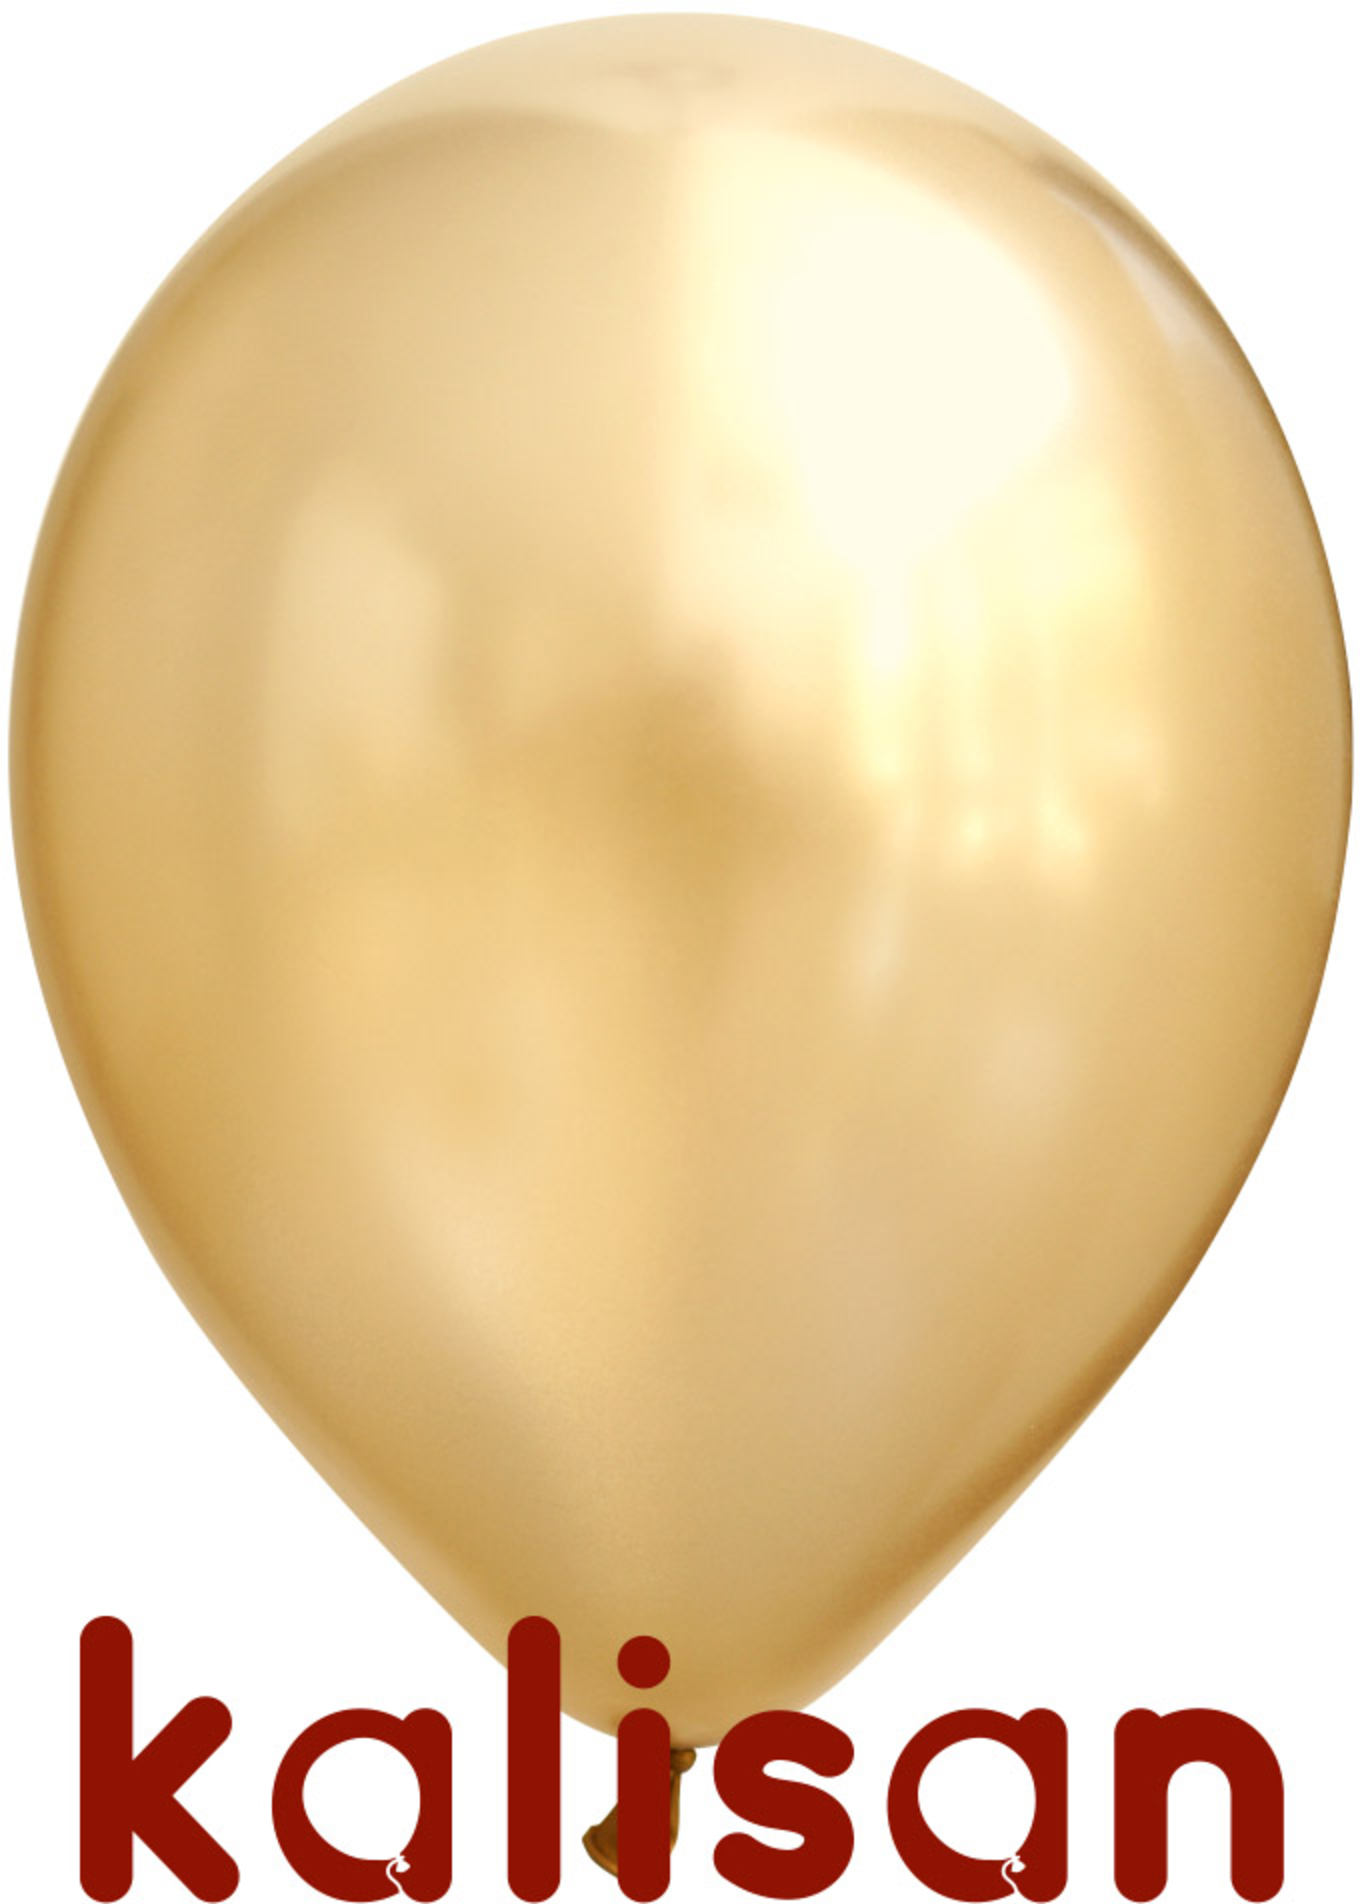 helium balloon - chrome - gold